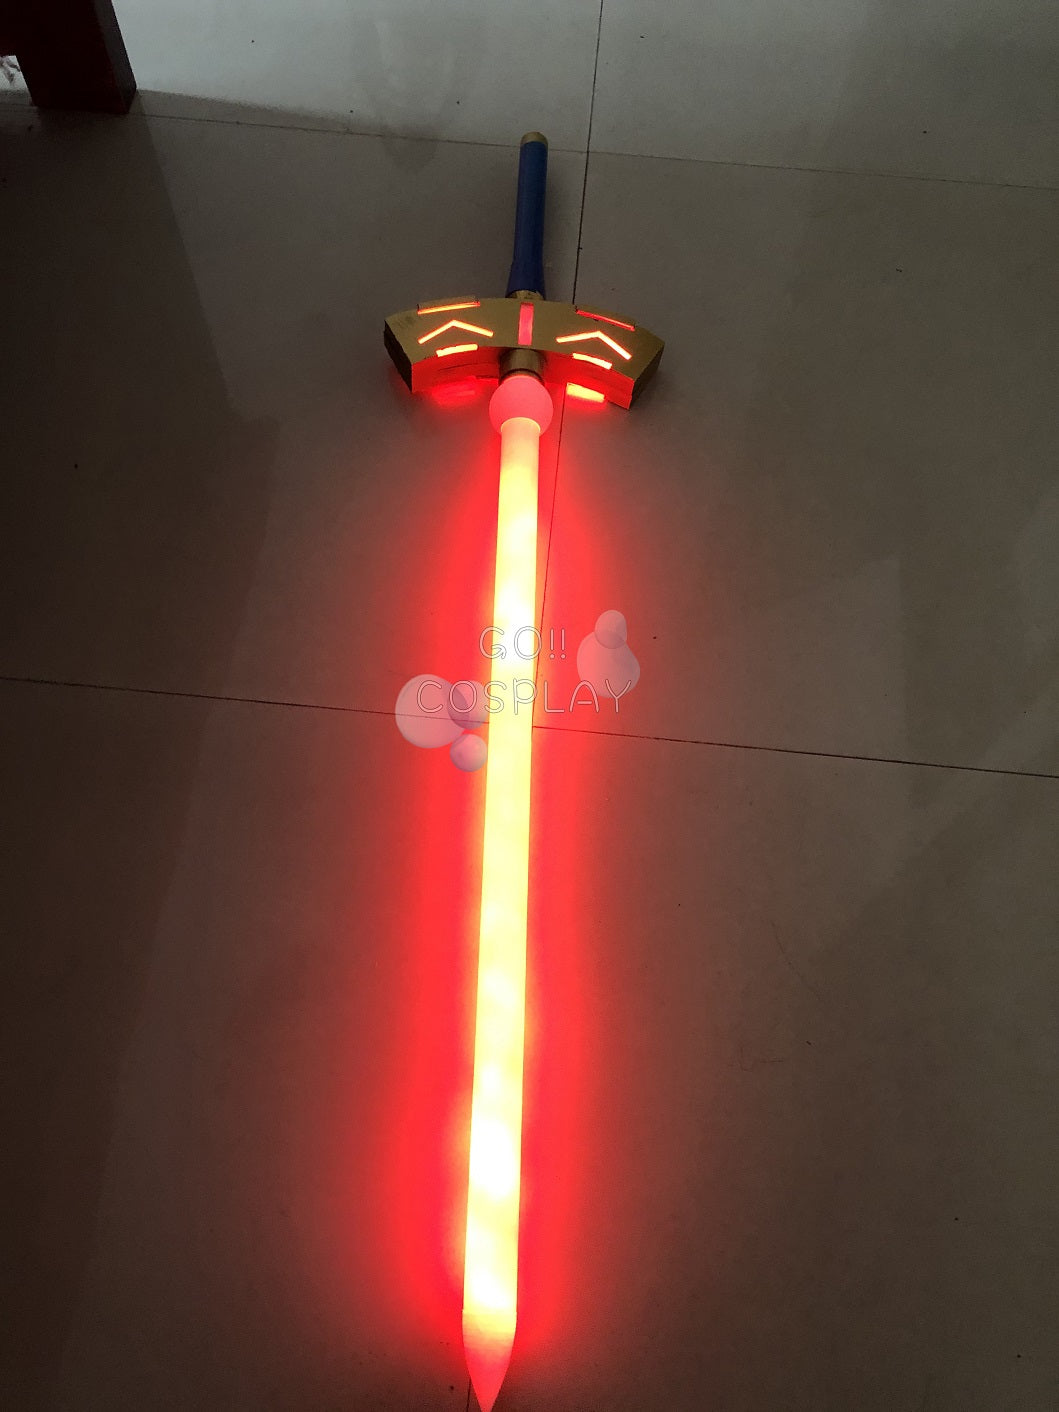 Fate/Grand Order Berserker MHX Alter Glowing Sword Replica